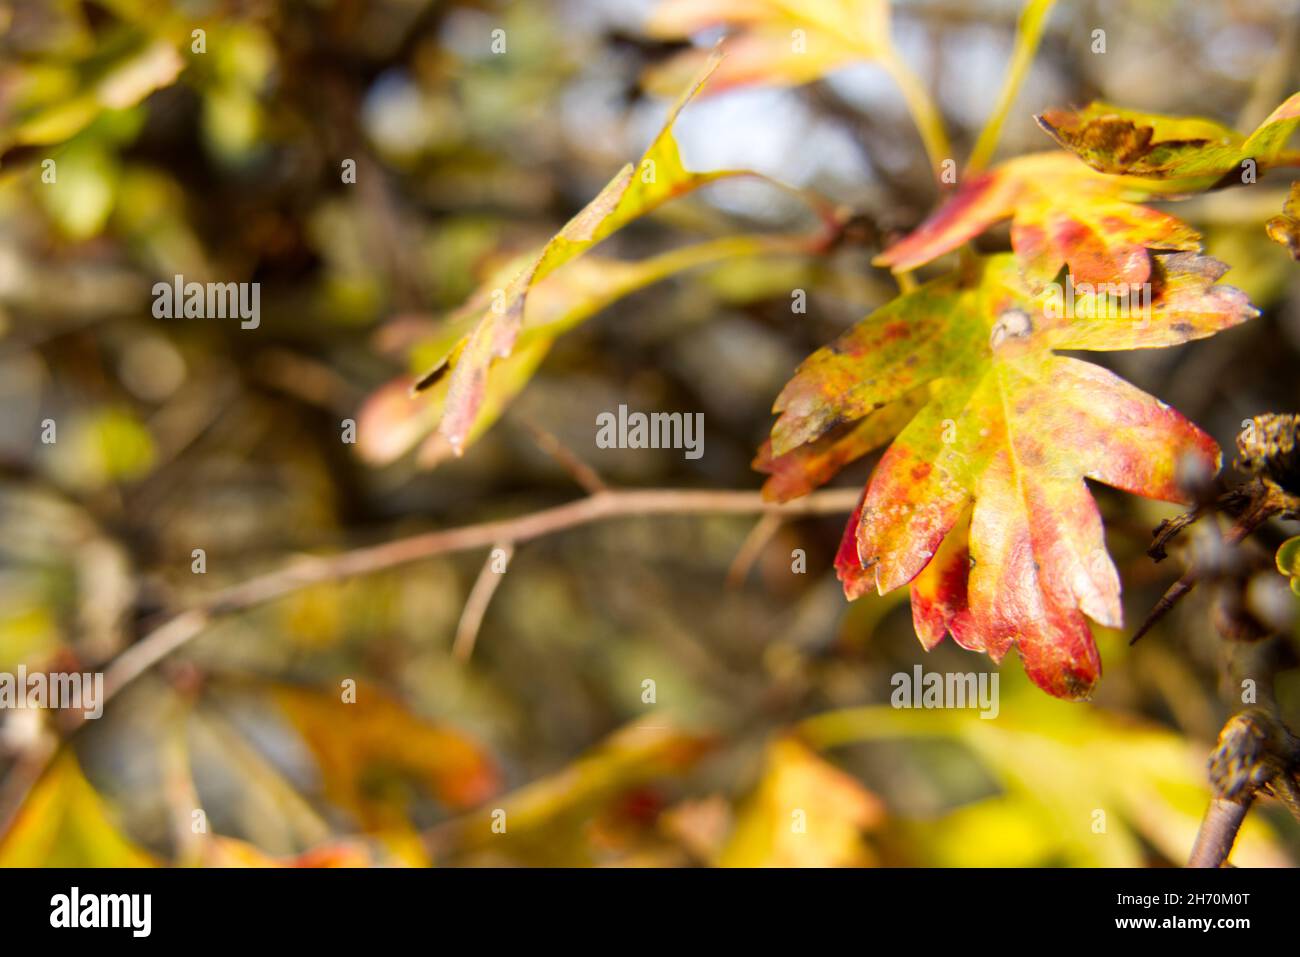 Primer plano de una hoja de espino (Crataegus) que se convierte de verde a amarillo, naranja y rojo en un día soleado en otoño. Copiar espacio a la izquierda. Foto de stock